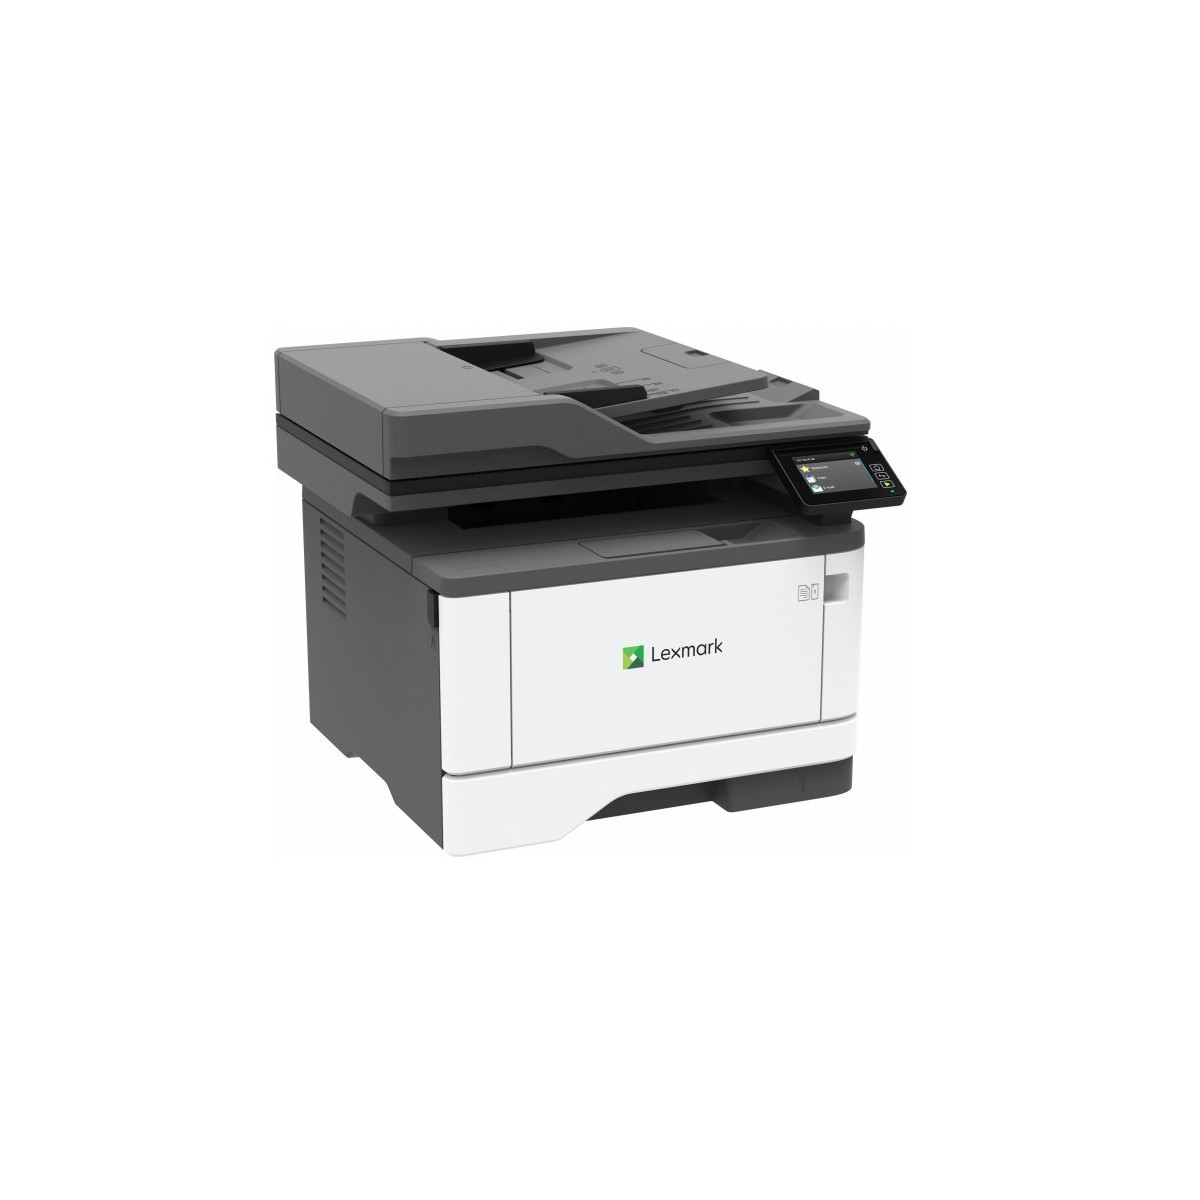 Lexmark XM1342 - Multifunktionsdrucker - s-w - Laser - A4-Legal Medien - Printer - Laser-Led